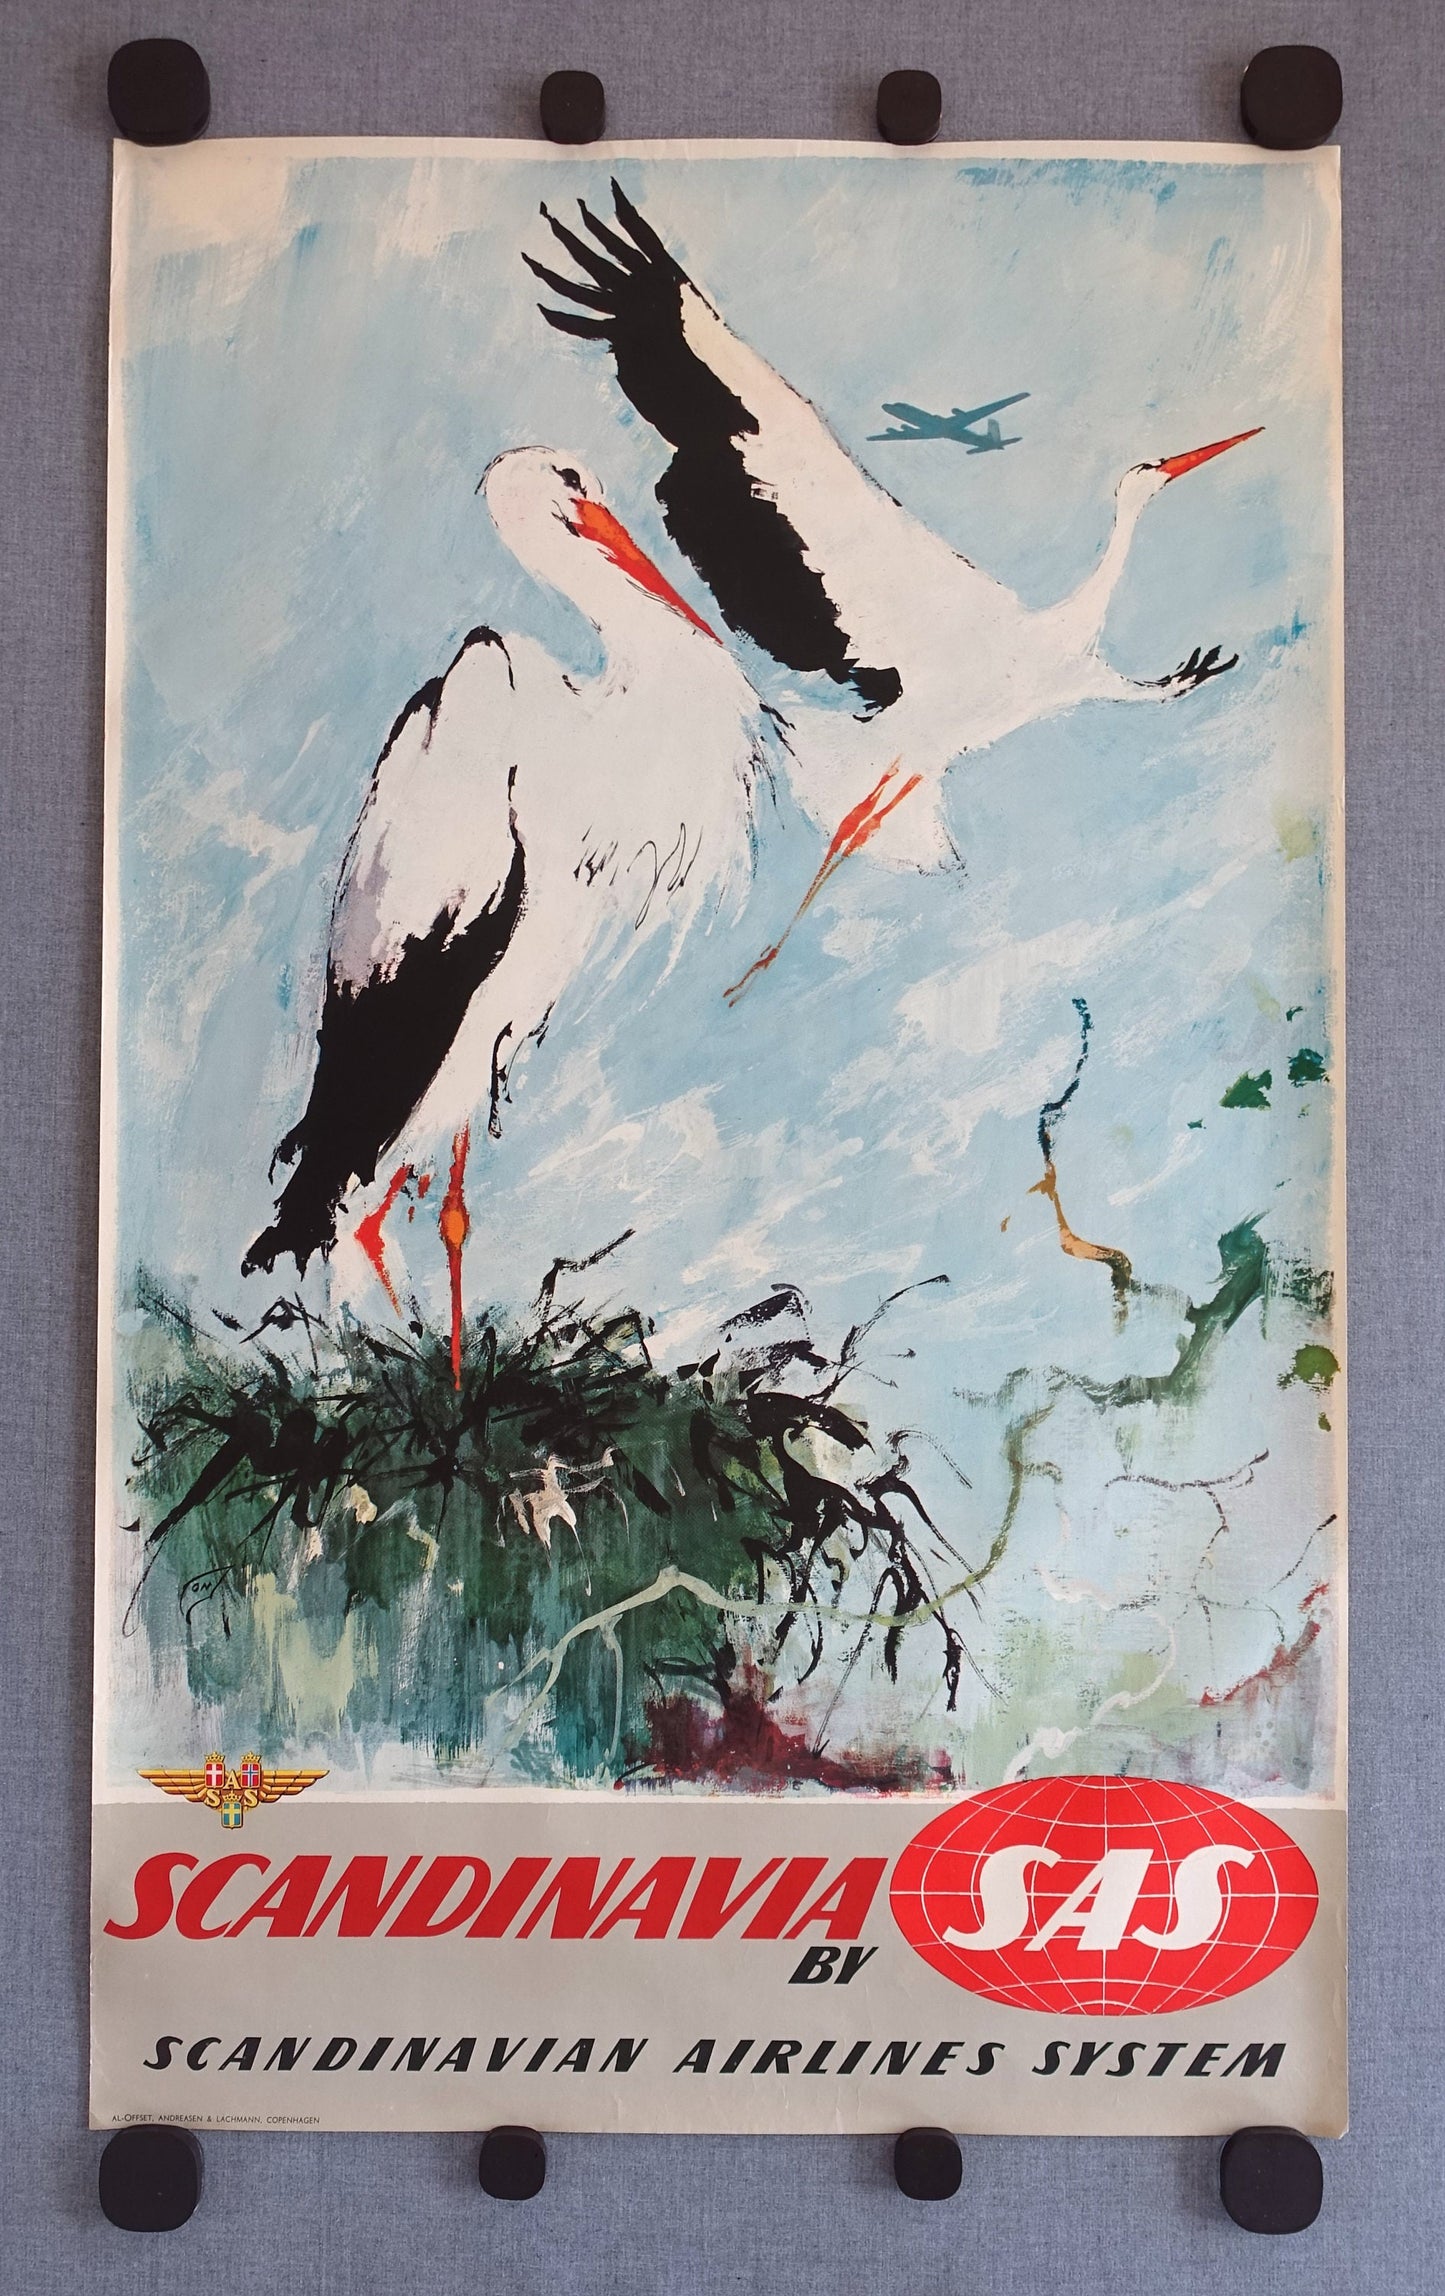 1950s SAS Airline Poster Scandinavia (Storks) - Original Vintage Poster